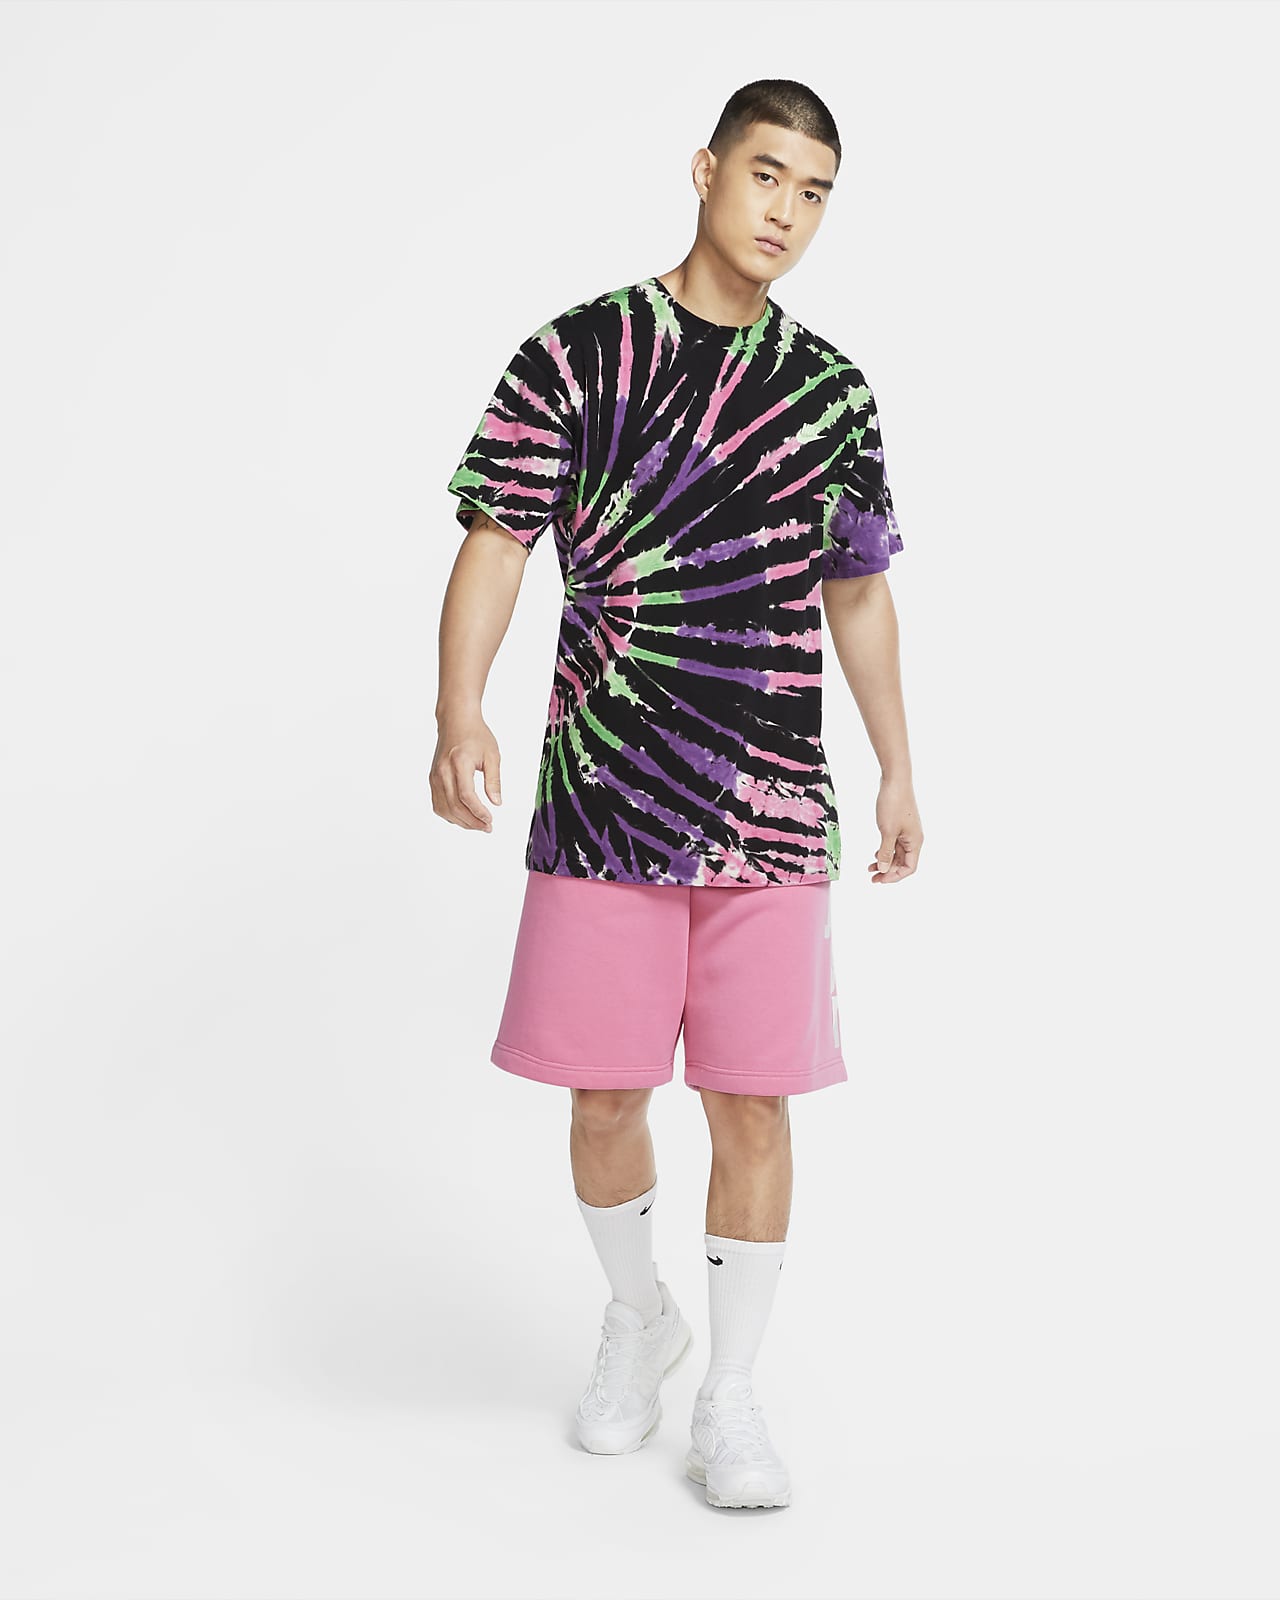 Nike Sportswear Men's Tie-Dye T-Shirt.